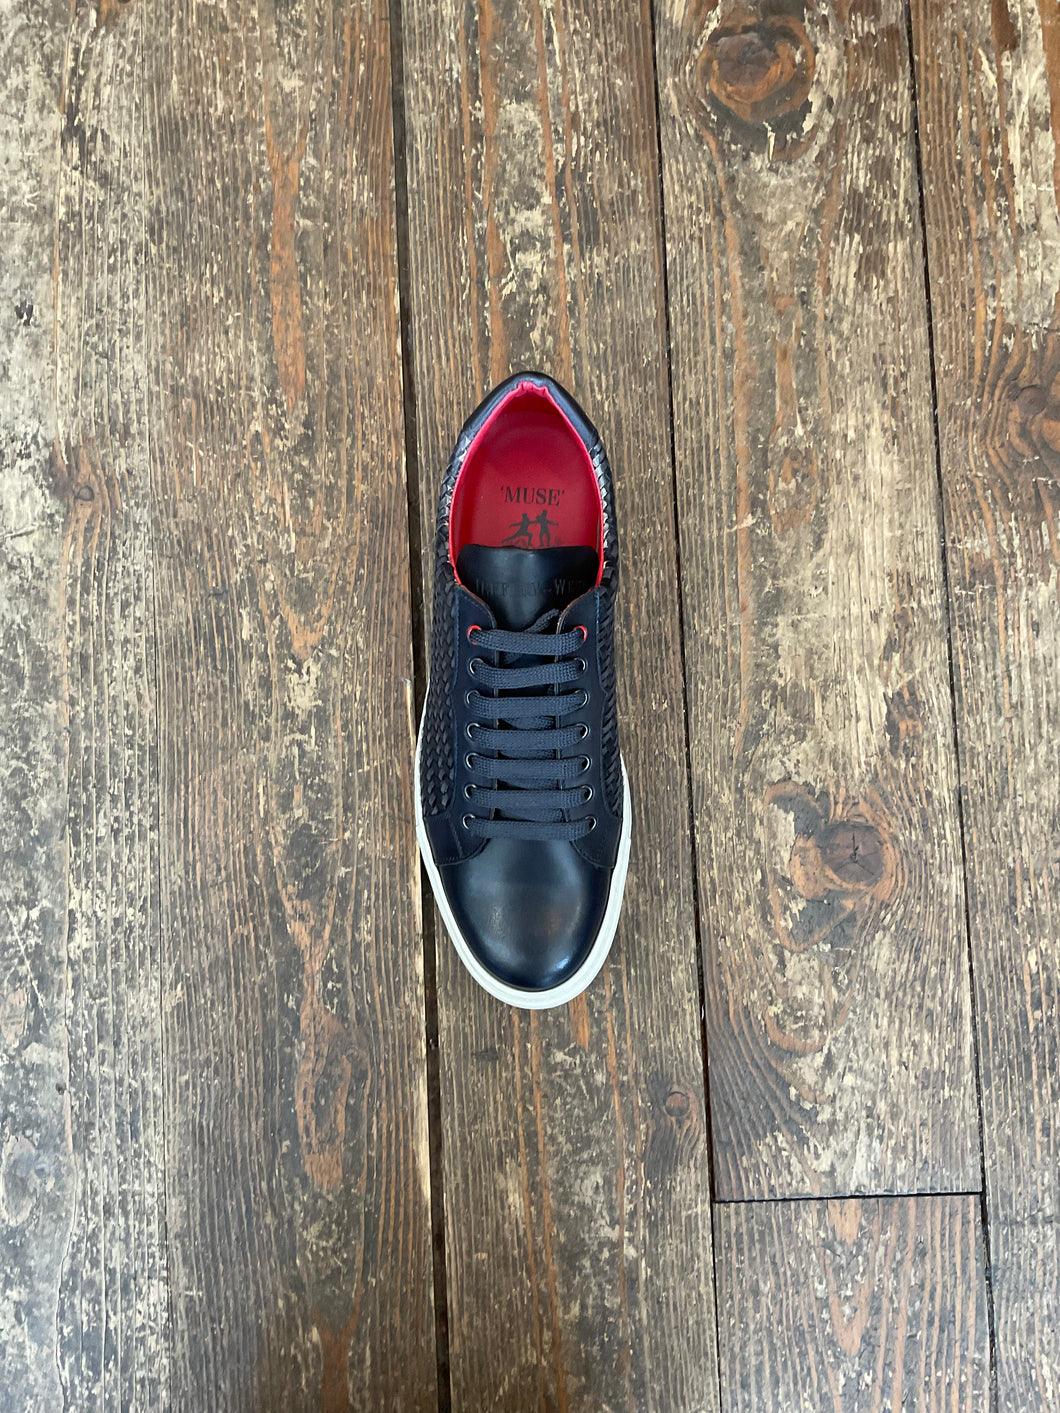 Jeffery West Grey Woven Sneaker (Off-White Sole)